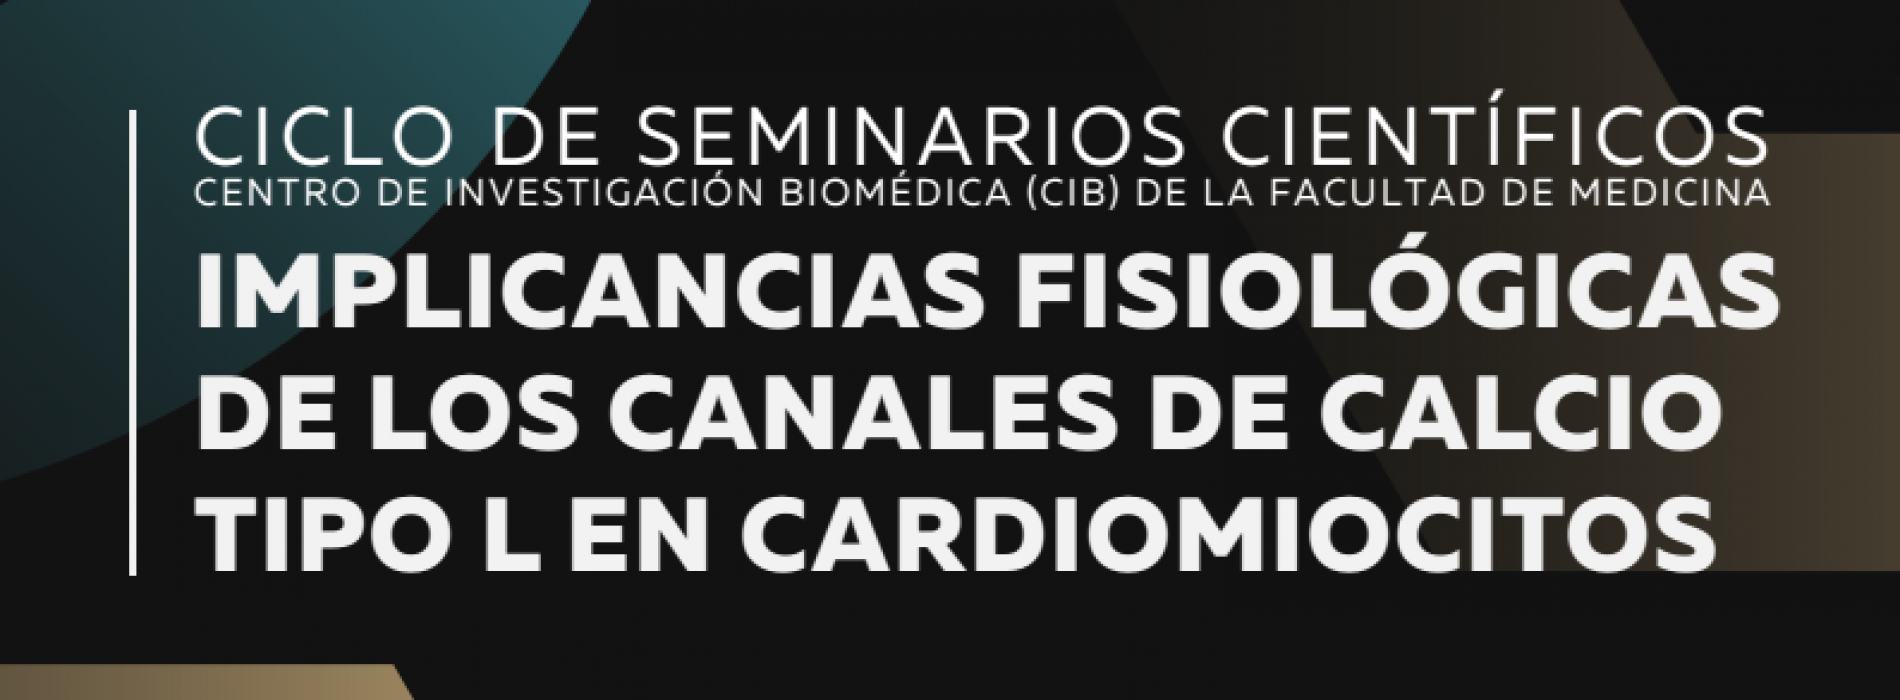 Invitación al Ciclo de Seminarios Científicos del CIB UDP, Jueves 15 de diciembre «Implicancias fisiológicas de los Canales de Calcio tipo L en cardiomiocitos». (Por el Dr. Diego Varela)